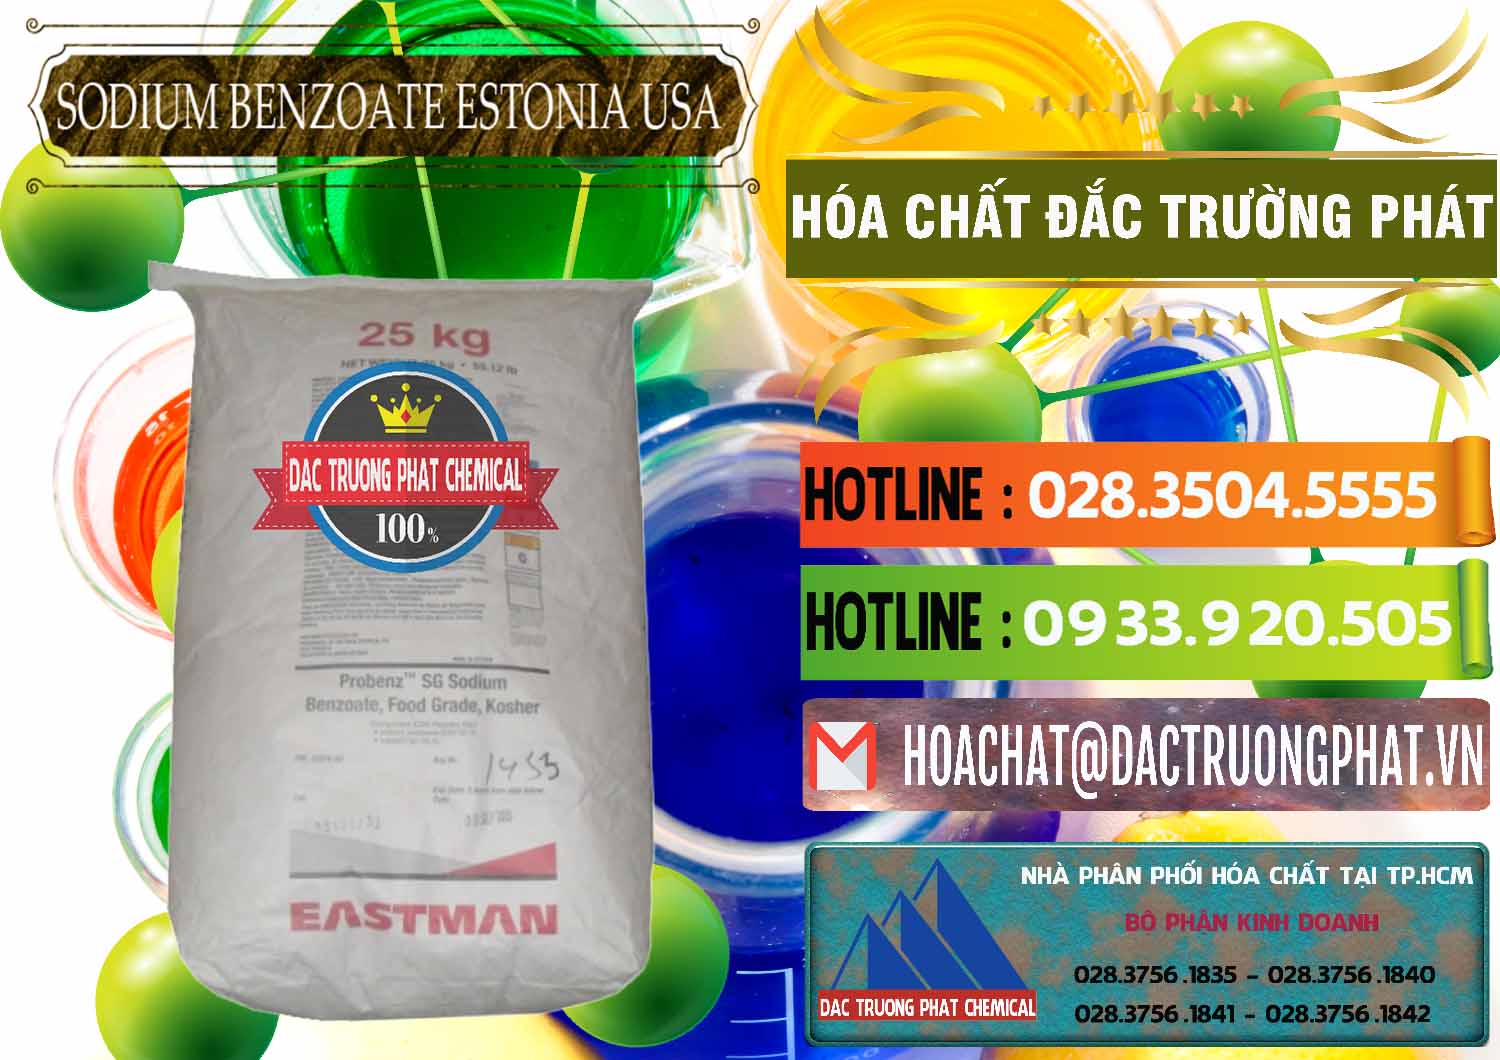 Cty chuyên bán - phân phối Sodium Benzoate - Mốc Bột Estonia Mỹ USA - 0468 - Công ty chuyên bán ( phân phối ) hóa chất tại TP.HCM - cungcaphoachat.com.vn